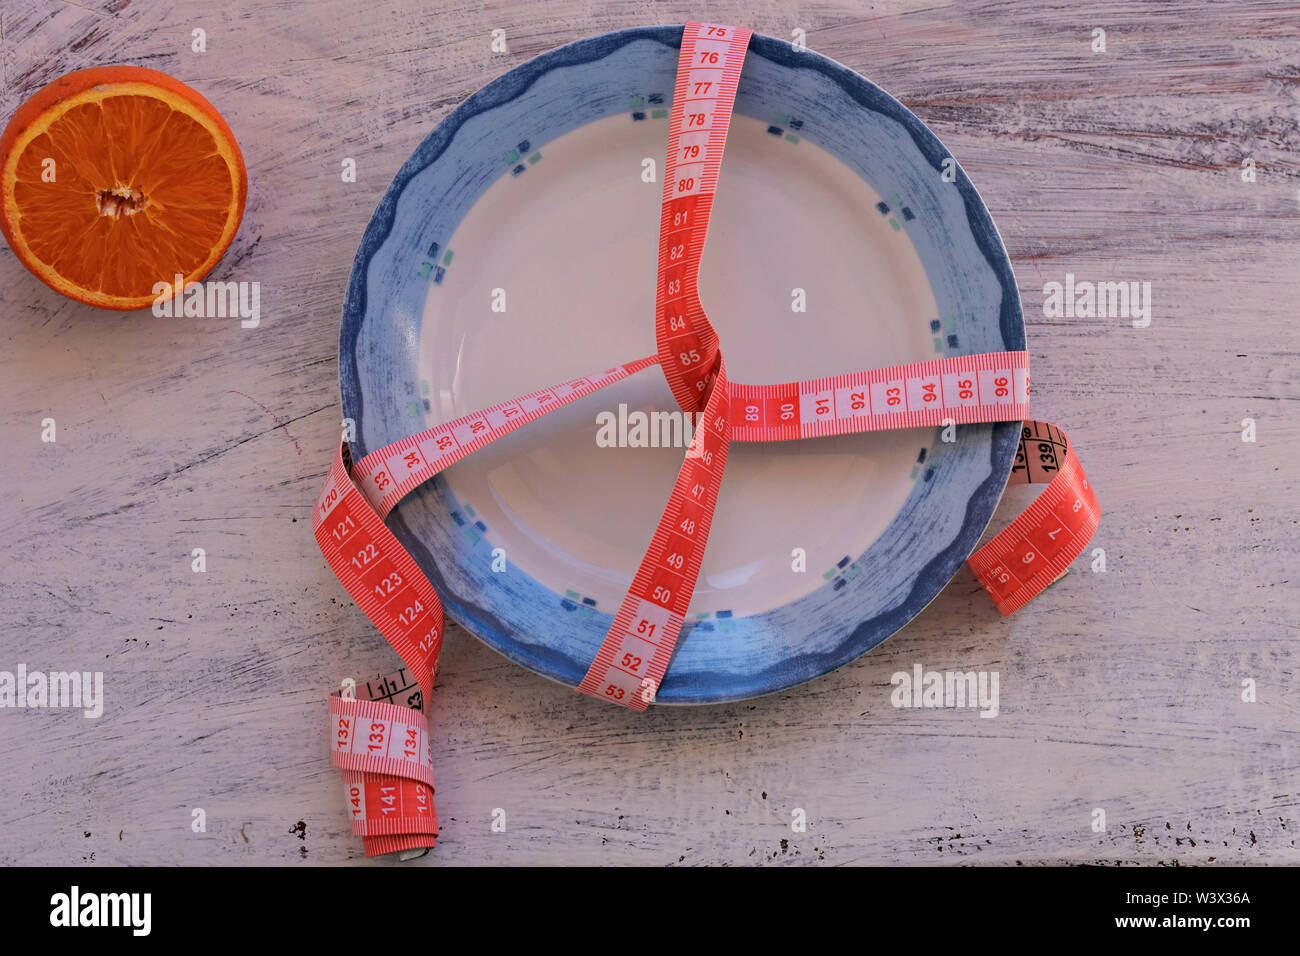 Eine halbe orange Frucht auf Teller mit Maßband, Messer und Gabel. Ernährung Lebensmittel auf hölzernen Tisch. Gewichtskontrolle - Bild Stockfoto